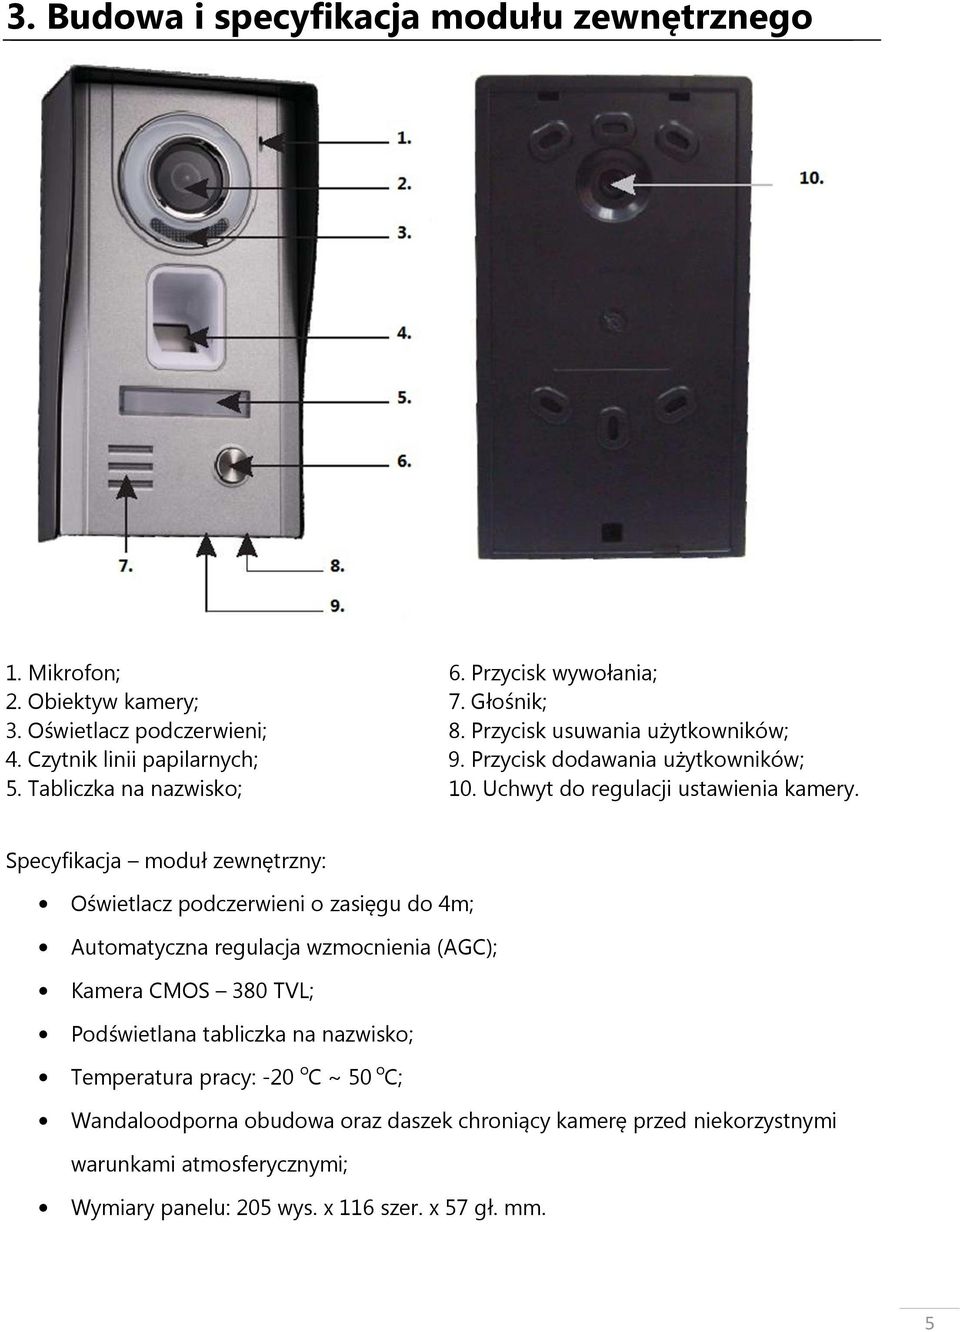 Specyfikacja moduł zewnętrzny: Oświetlacz podczerwieni o zasięgu do 4m; Automatyczna regulacja wzmocnienia (AGC); Kamera CMOS 380 TVL; Podświetlana tabliczka na